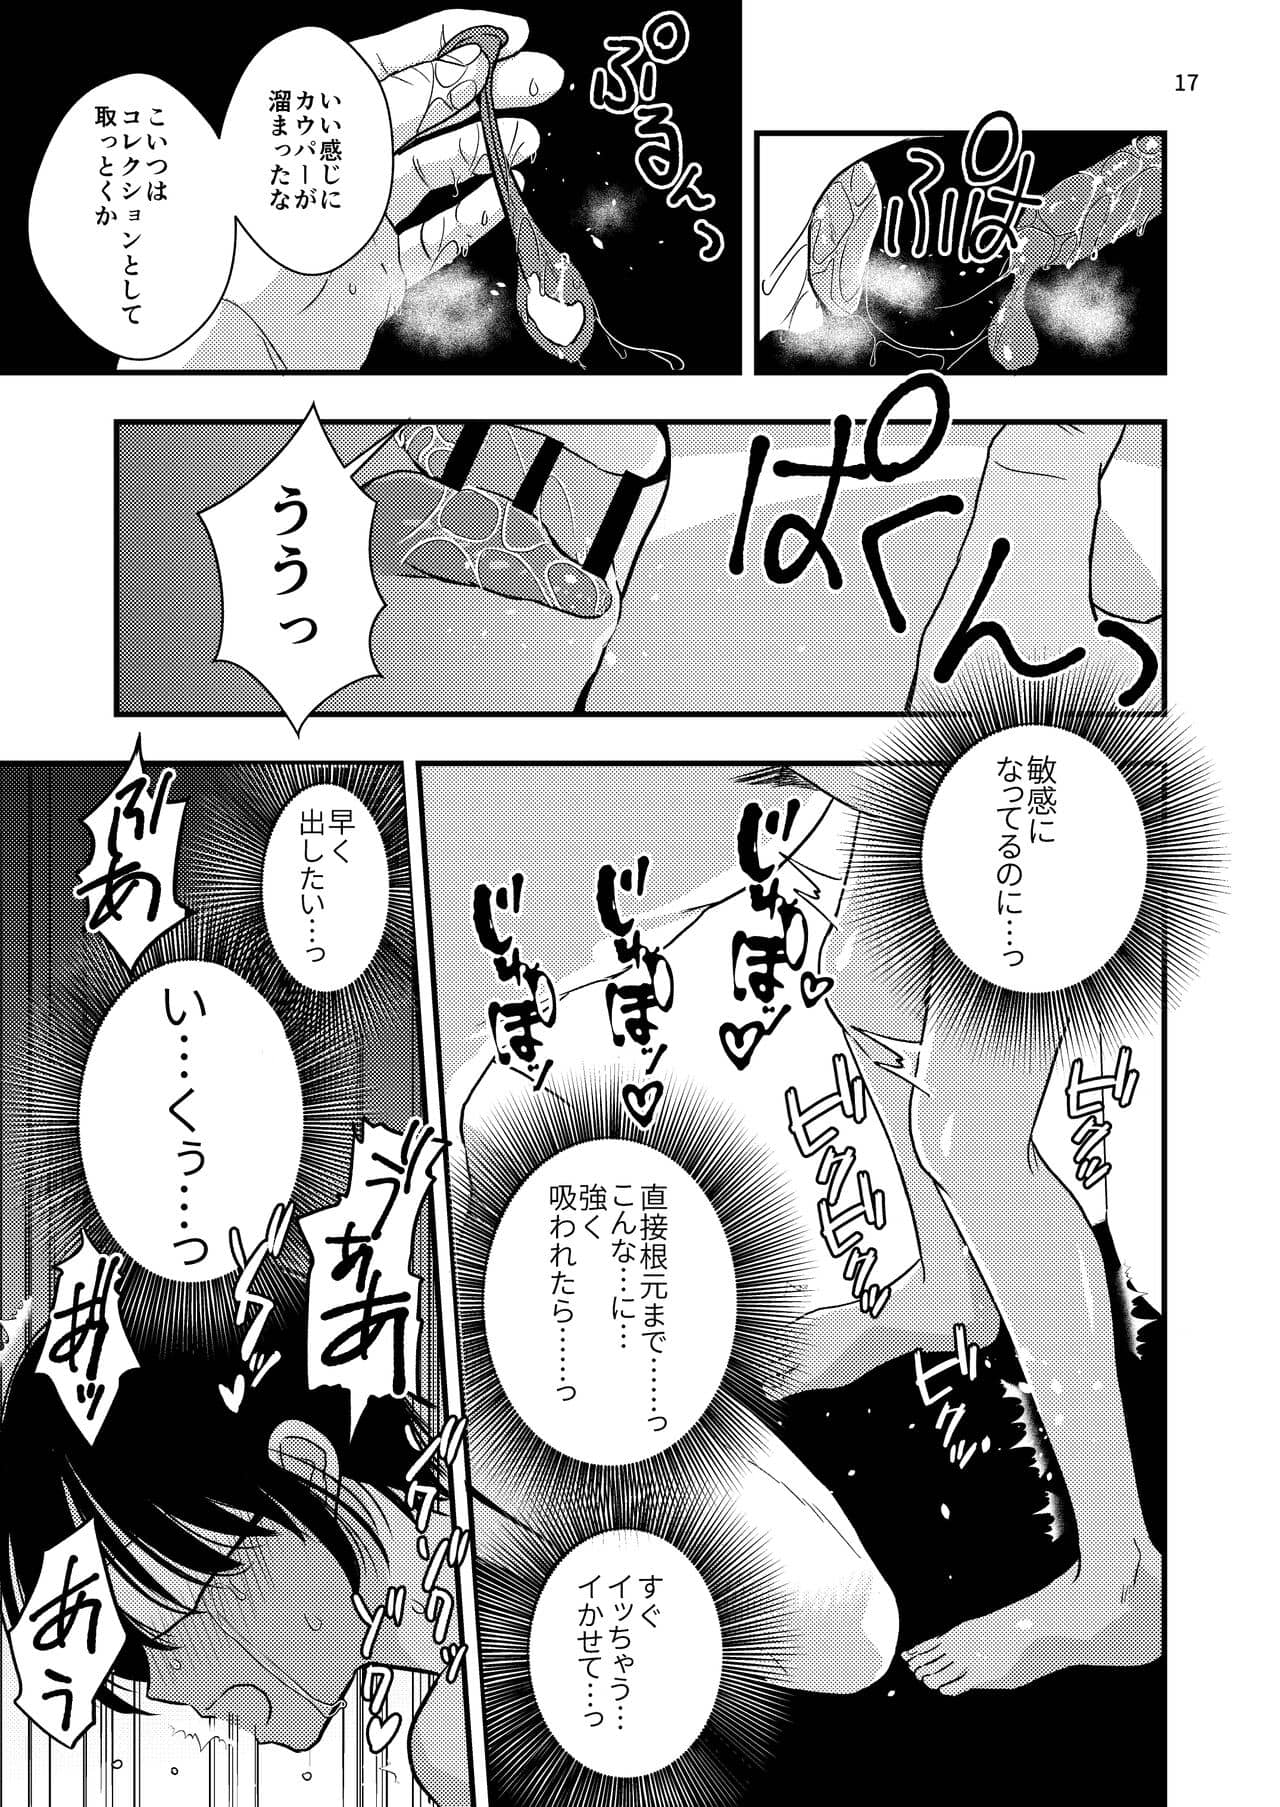 Yokubo Kaikyu Dai 570 Sho - Natsu no Kusuri Re × Renzoku Akume Shoji × Shiri Shojo Re × Rin'o Sareta Boku. Joso Kosupureiya Iori Kun no Baai